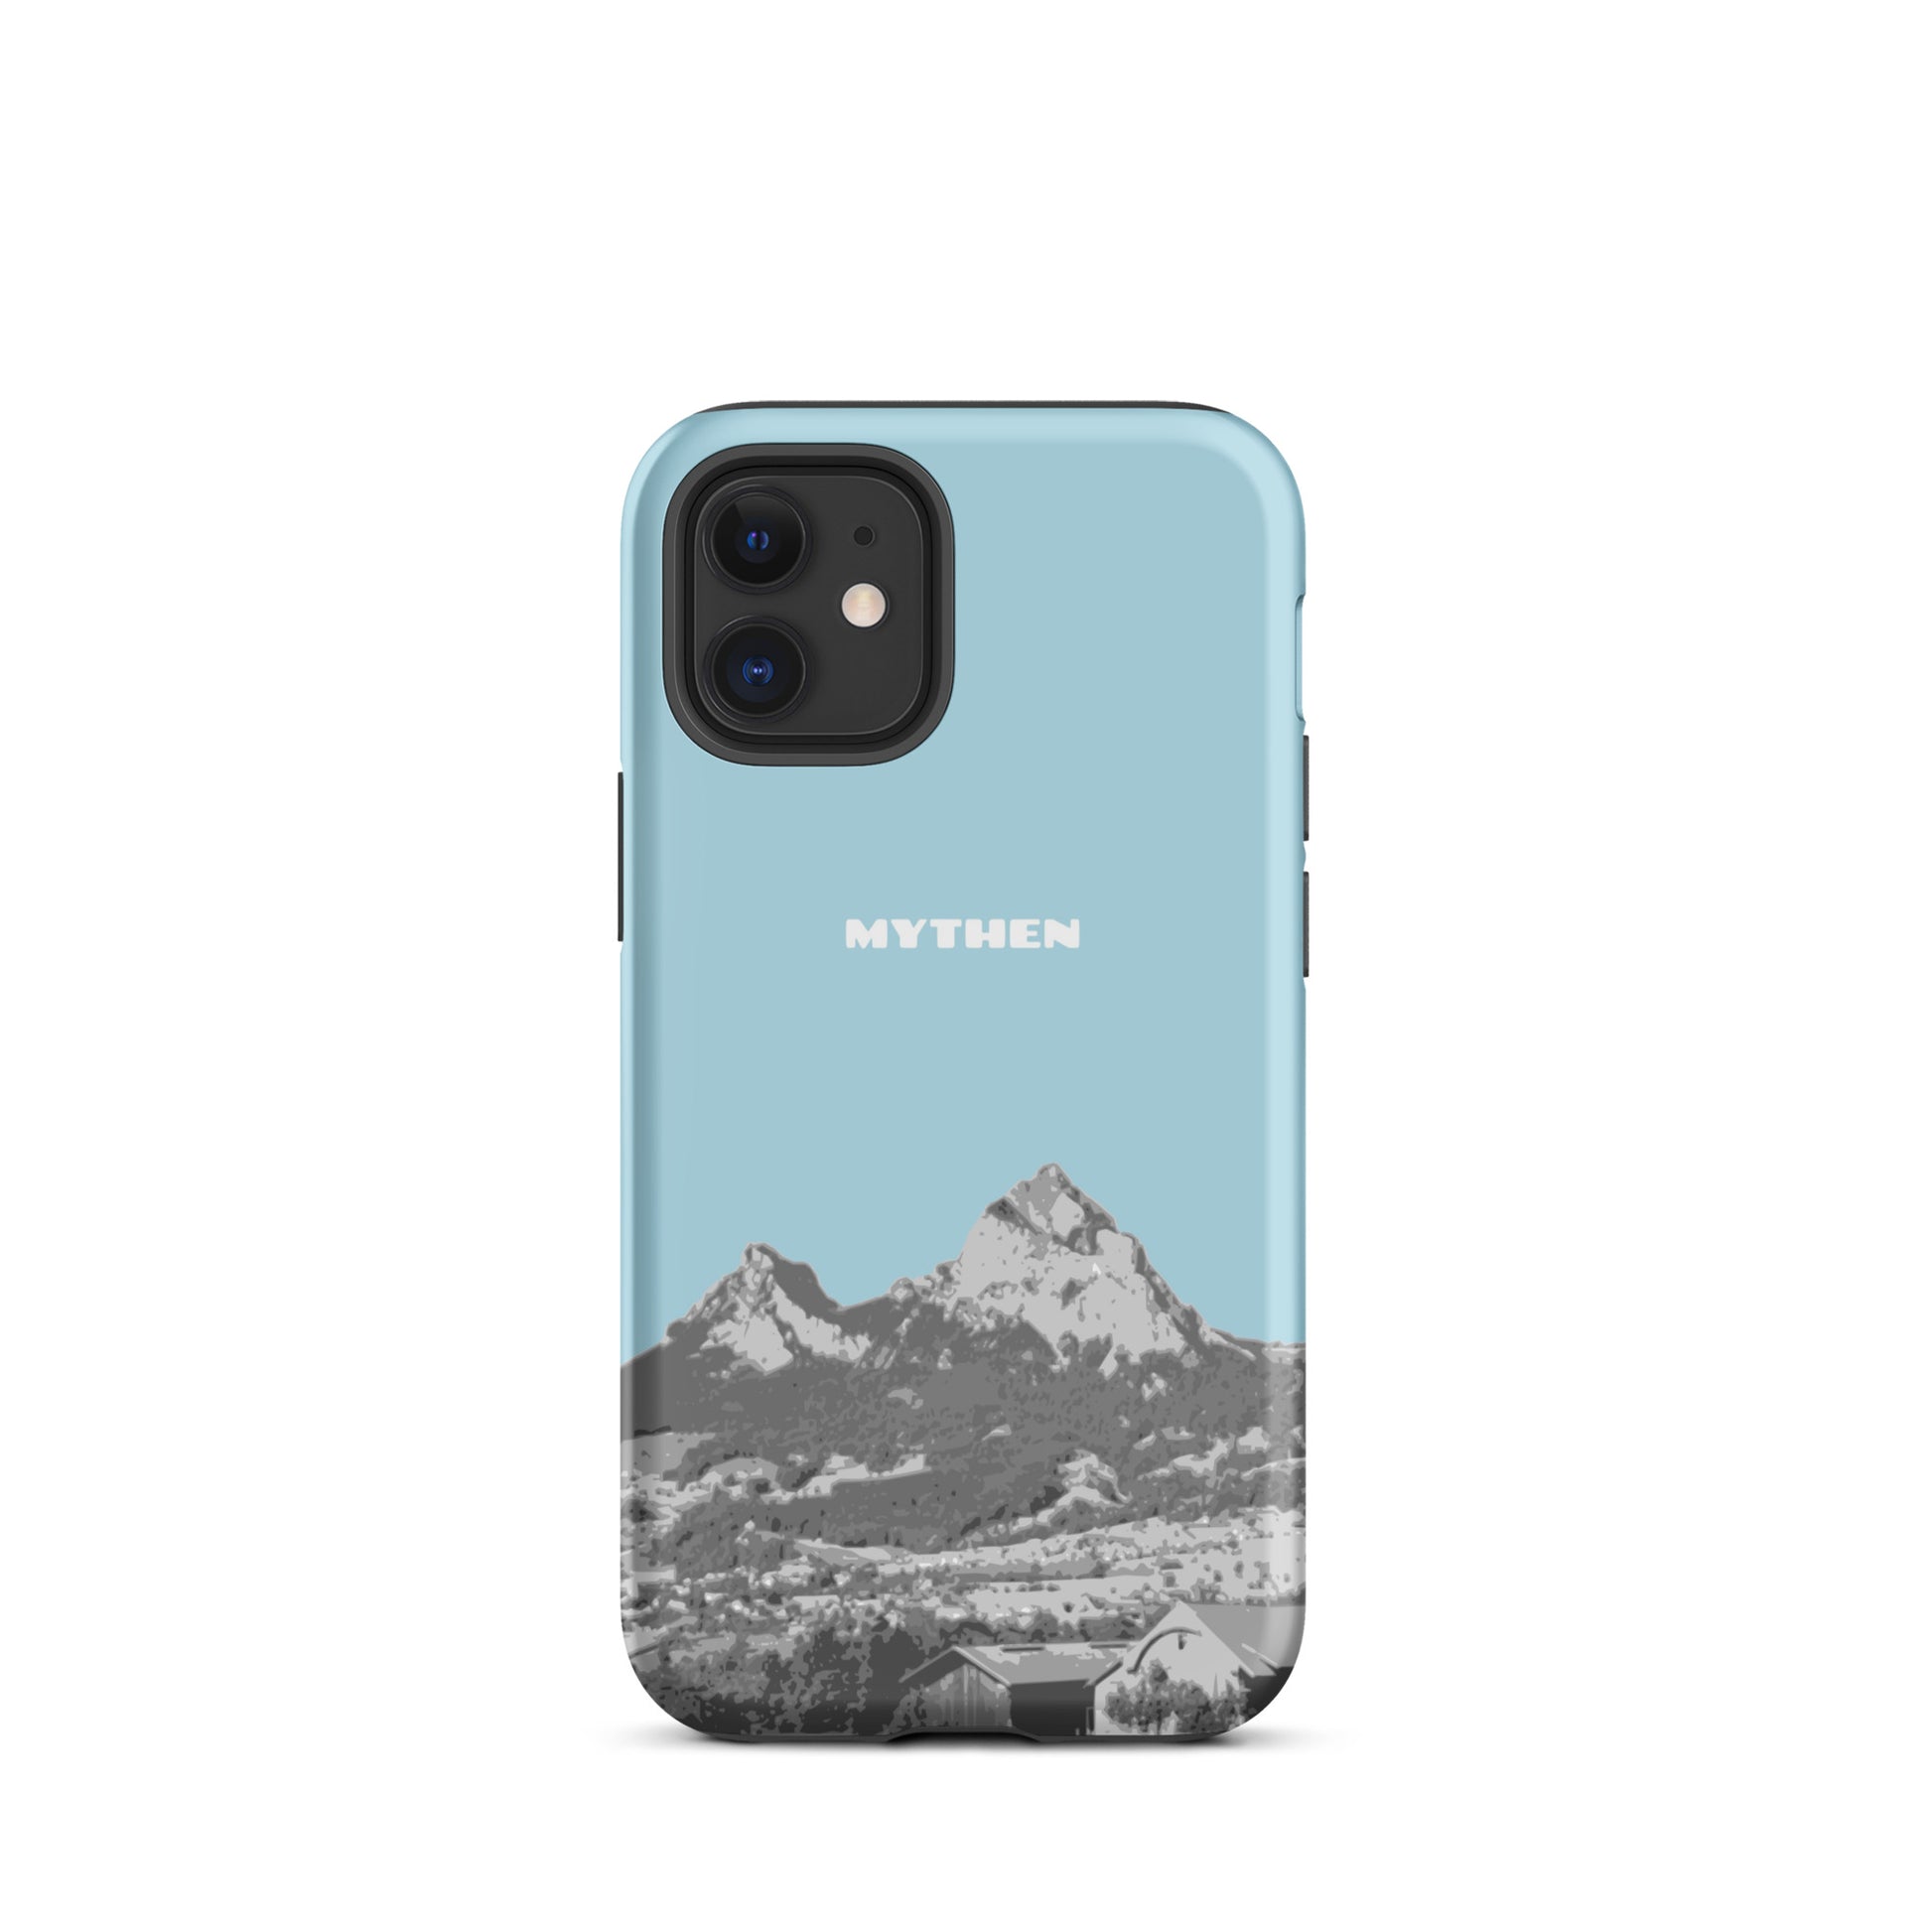 Hülle für das iPhone 12 mini von Apple in der Farbe Hellblau, die den Grossen Mythen und den Kleinen Mythen bei Schwyz zeigt. 